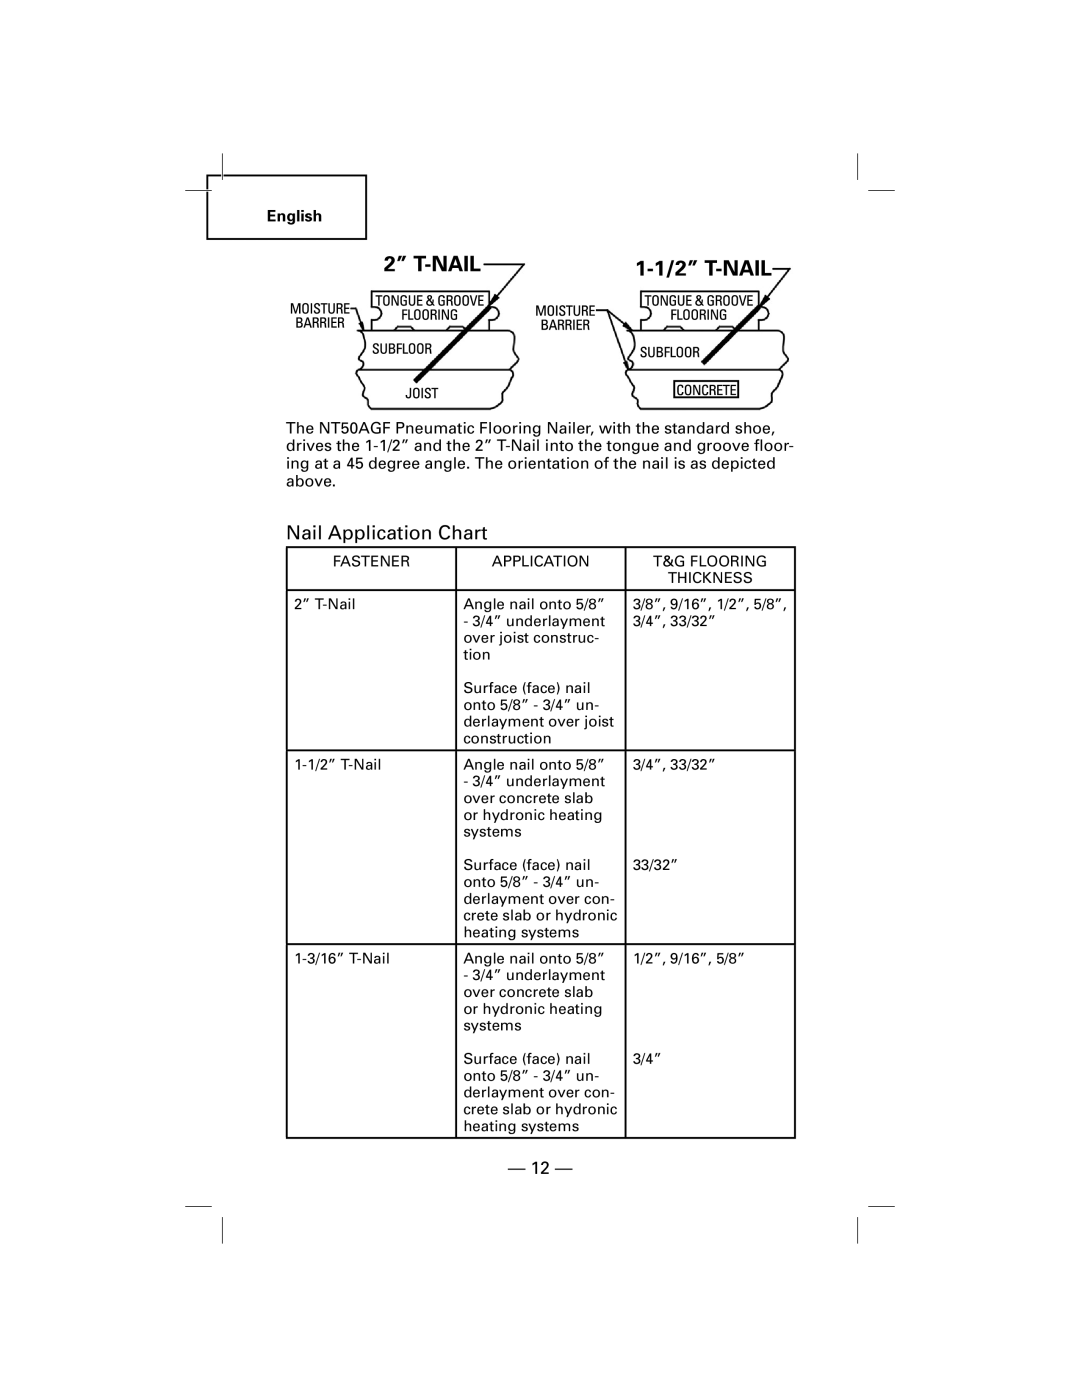 Hitachi NT50AGF manual Nail Application Chart 